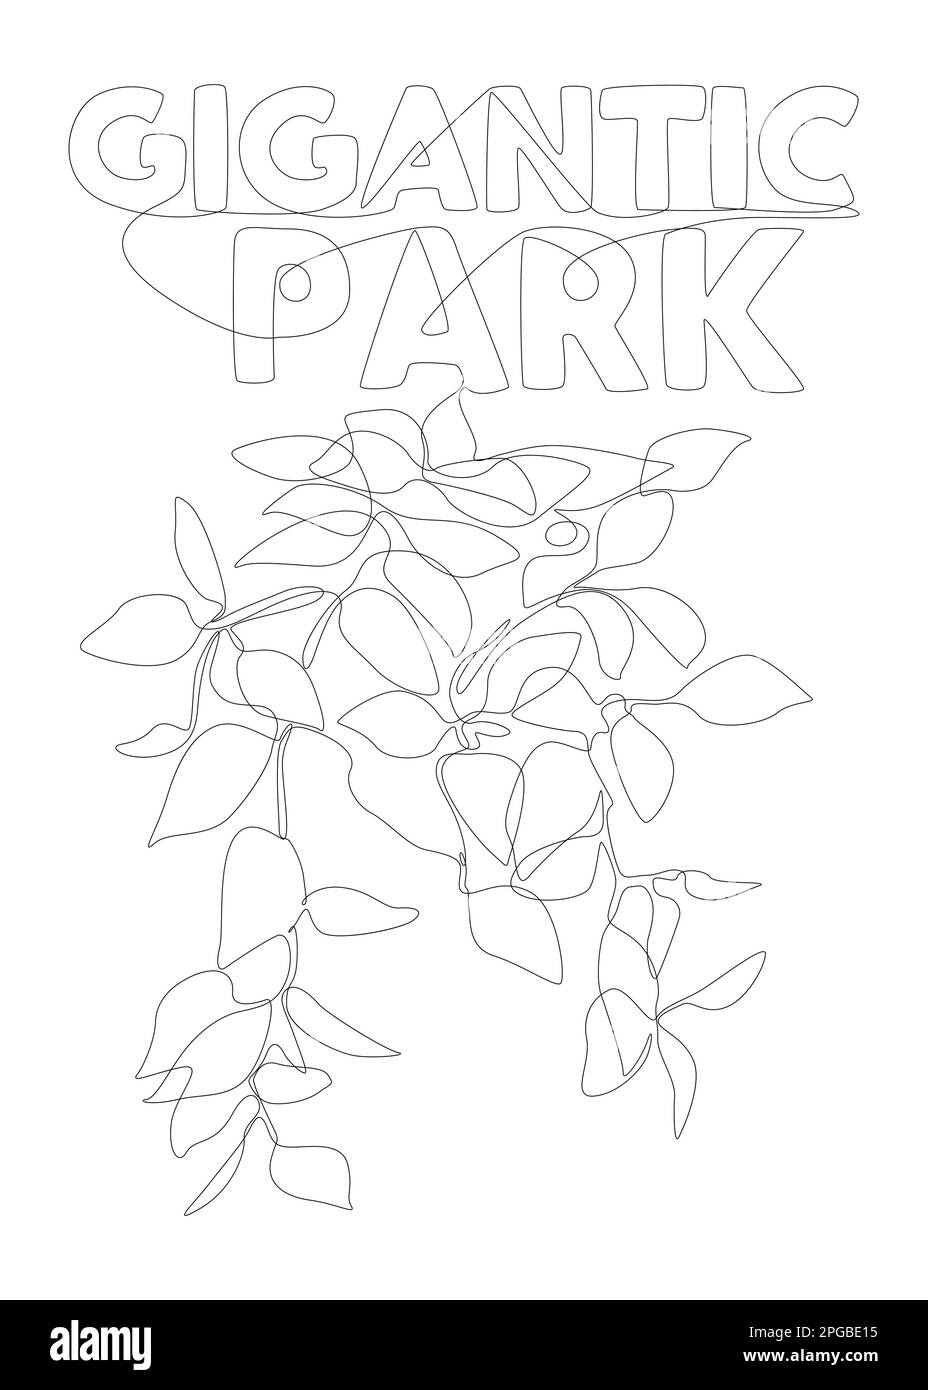 Eine durchgehende Zeile gigantischer Park-Wort mit Pflanzenblättern. Vektorkonzept zur Darstellung dünner Linien. Kontur Zeichnen kreativer Ideen. Stock Vektor